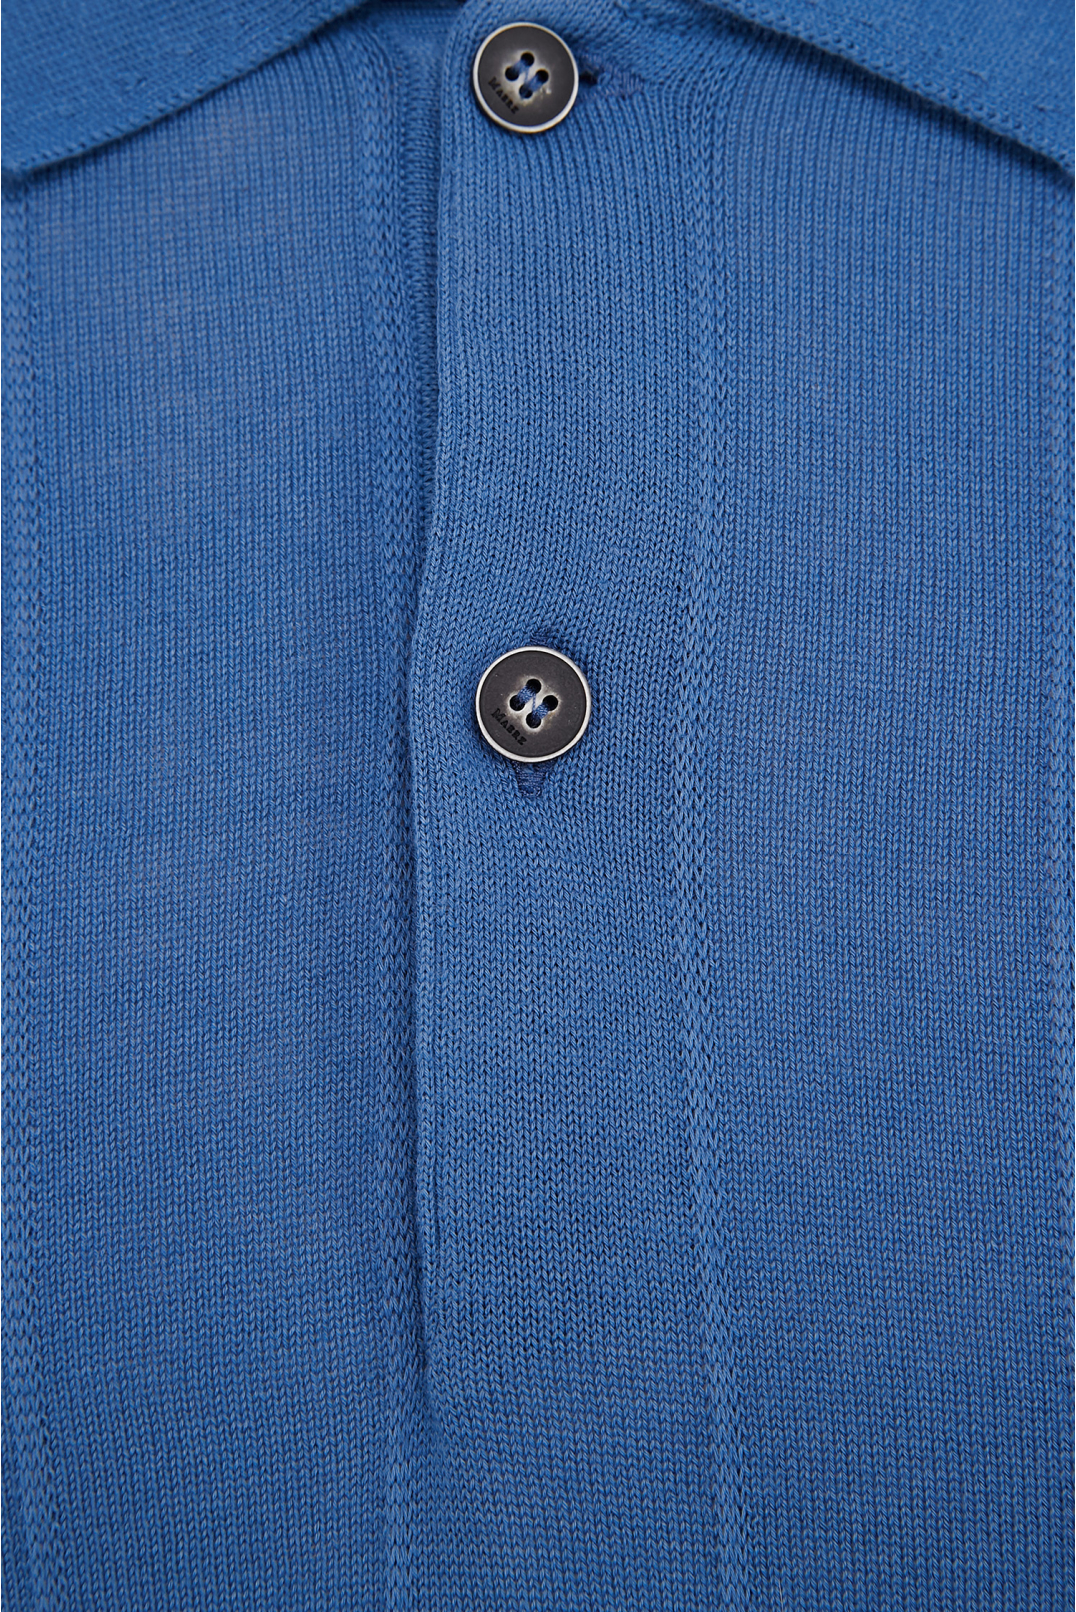 Чоловічий синій джемпер з коротким рукавом - 3